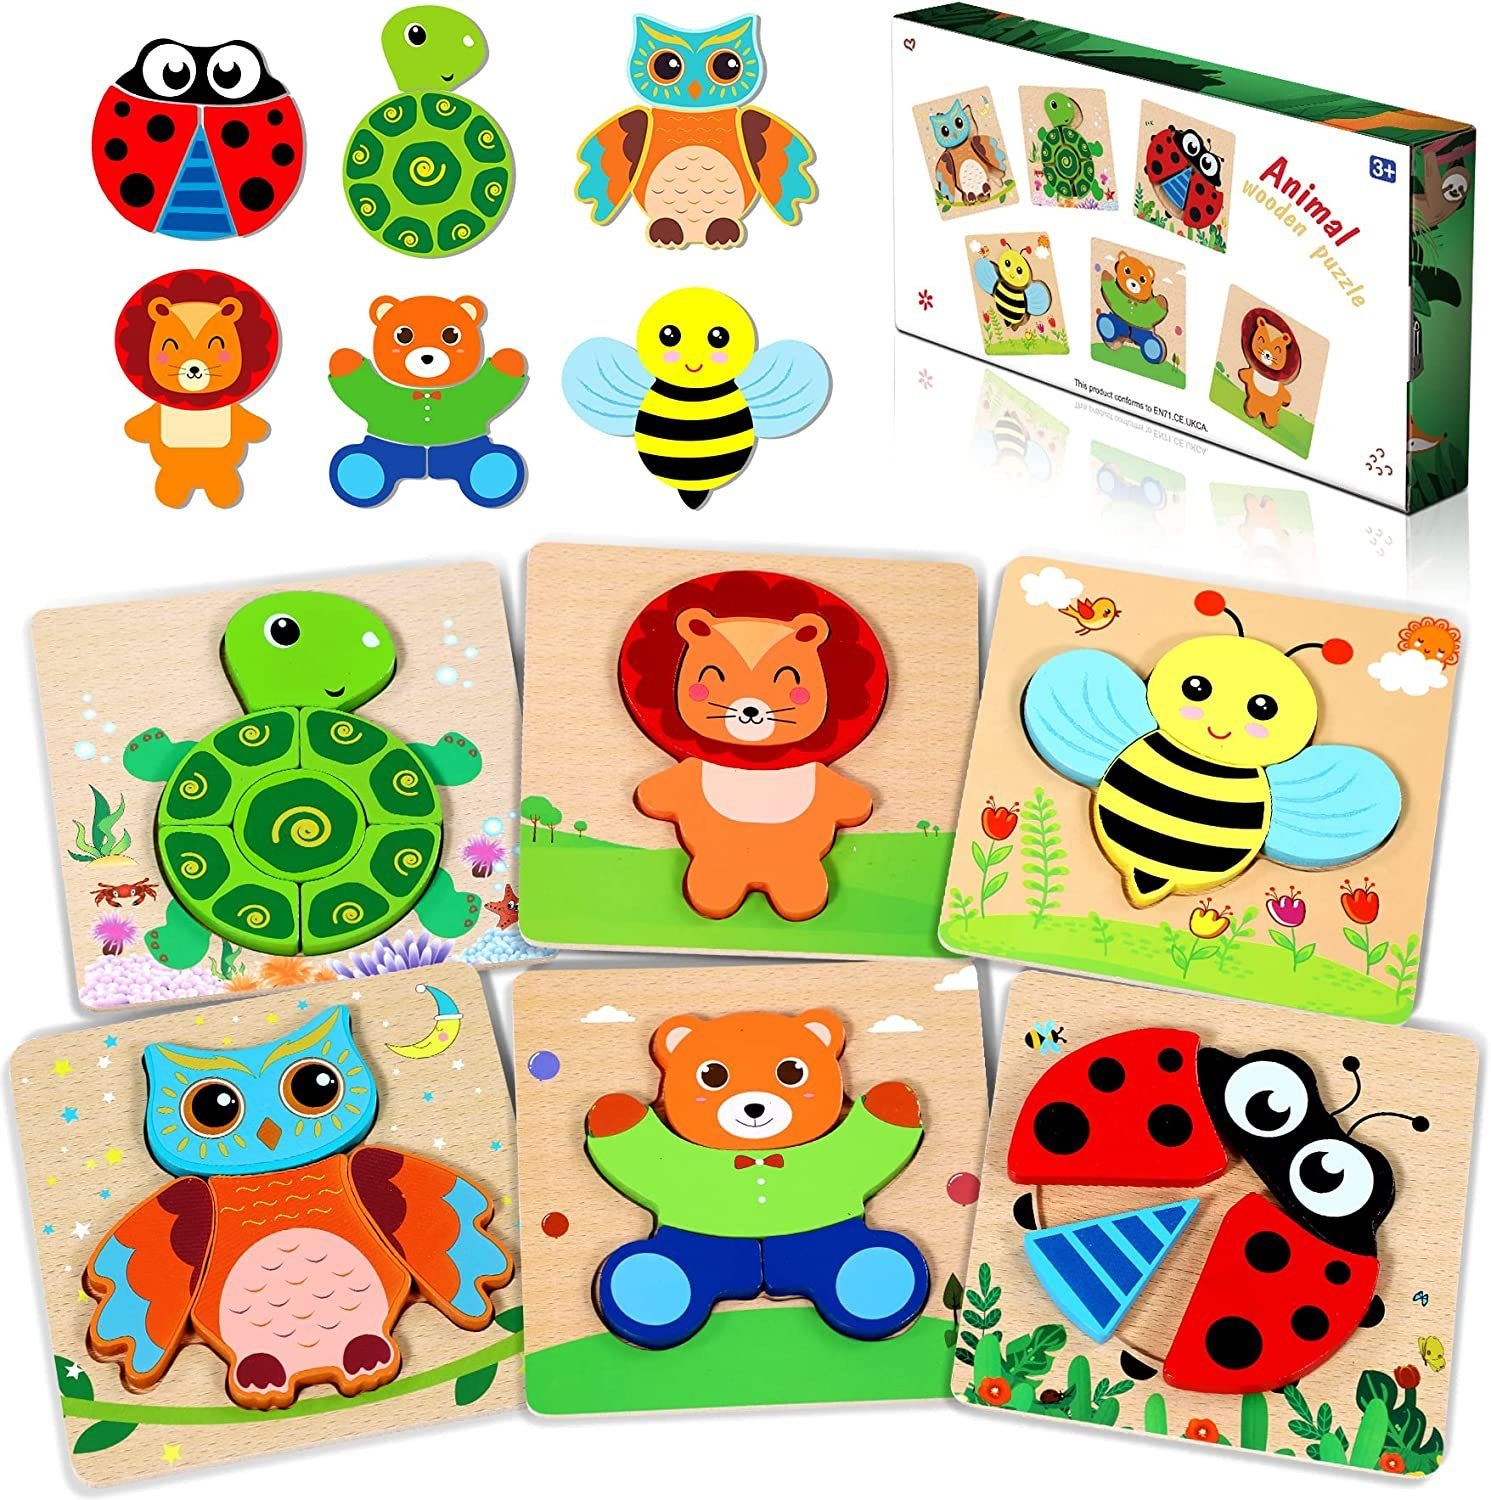 POPOLIC 3D пазлы spielzeug puzzle, 6pcs kinder holzpuzzle, 6 Пазлыteile, Verbesserung der Lernfähigkeit Ihres Kindes